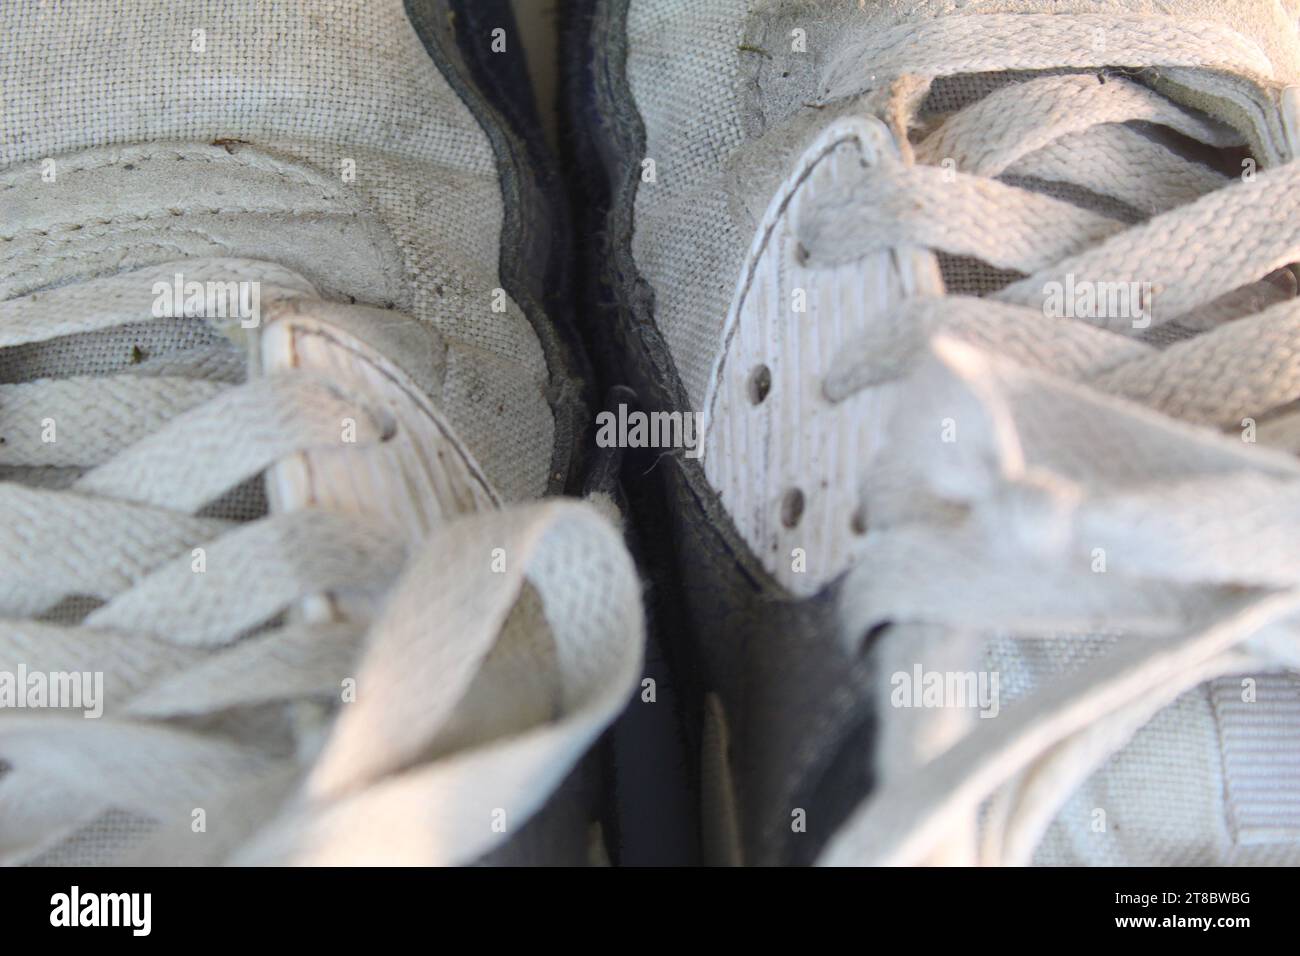 Nike air max classic immagini e fotografie stock ad alta risoluzione - Alamy